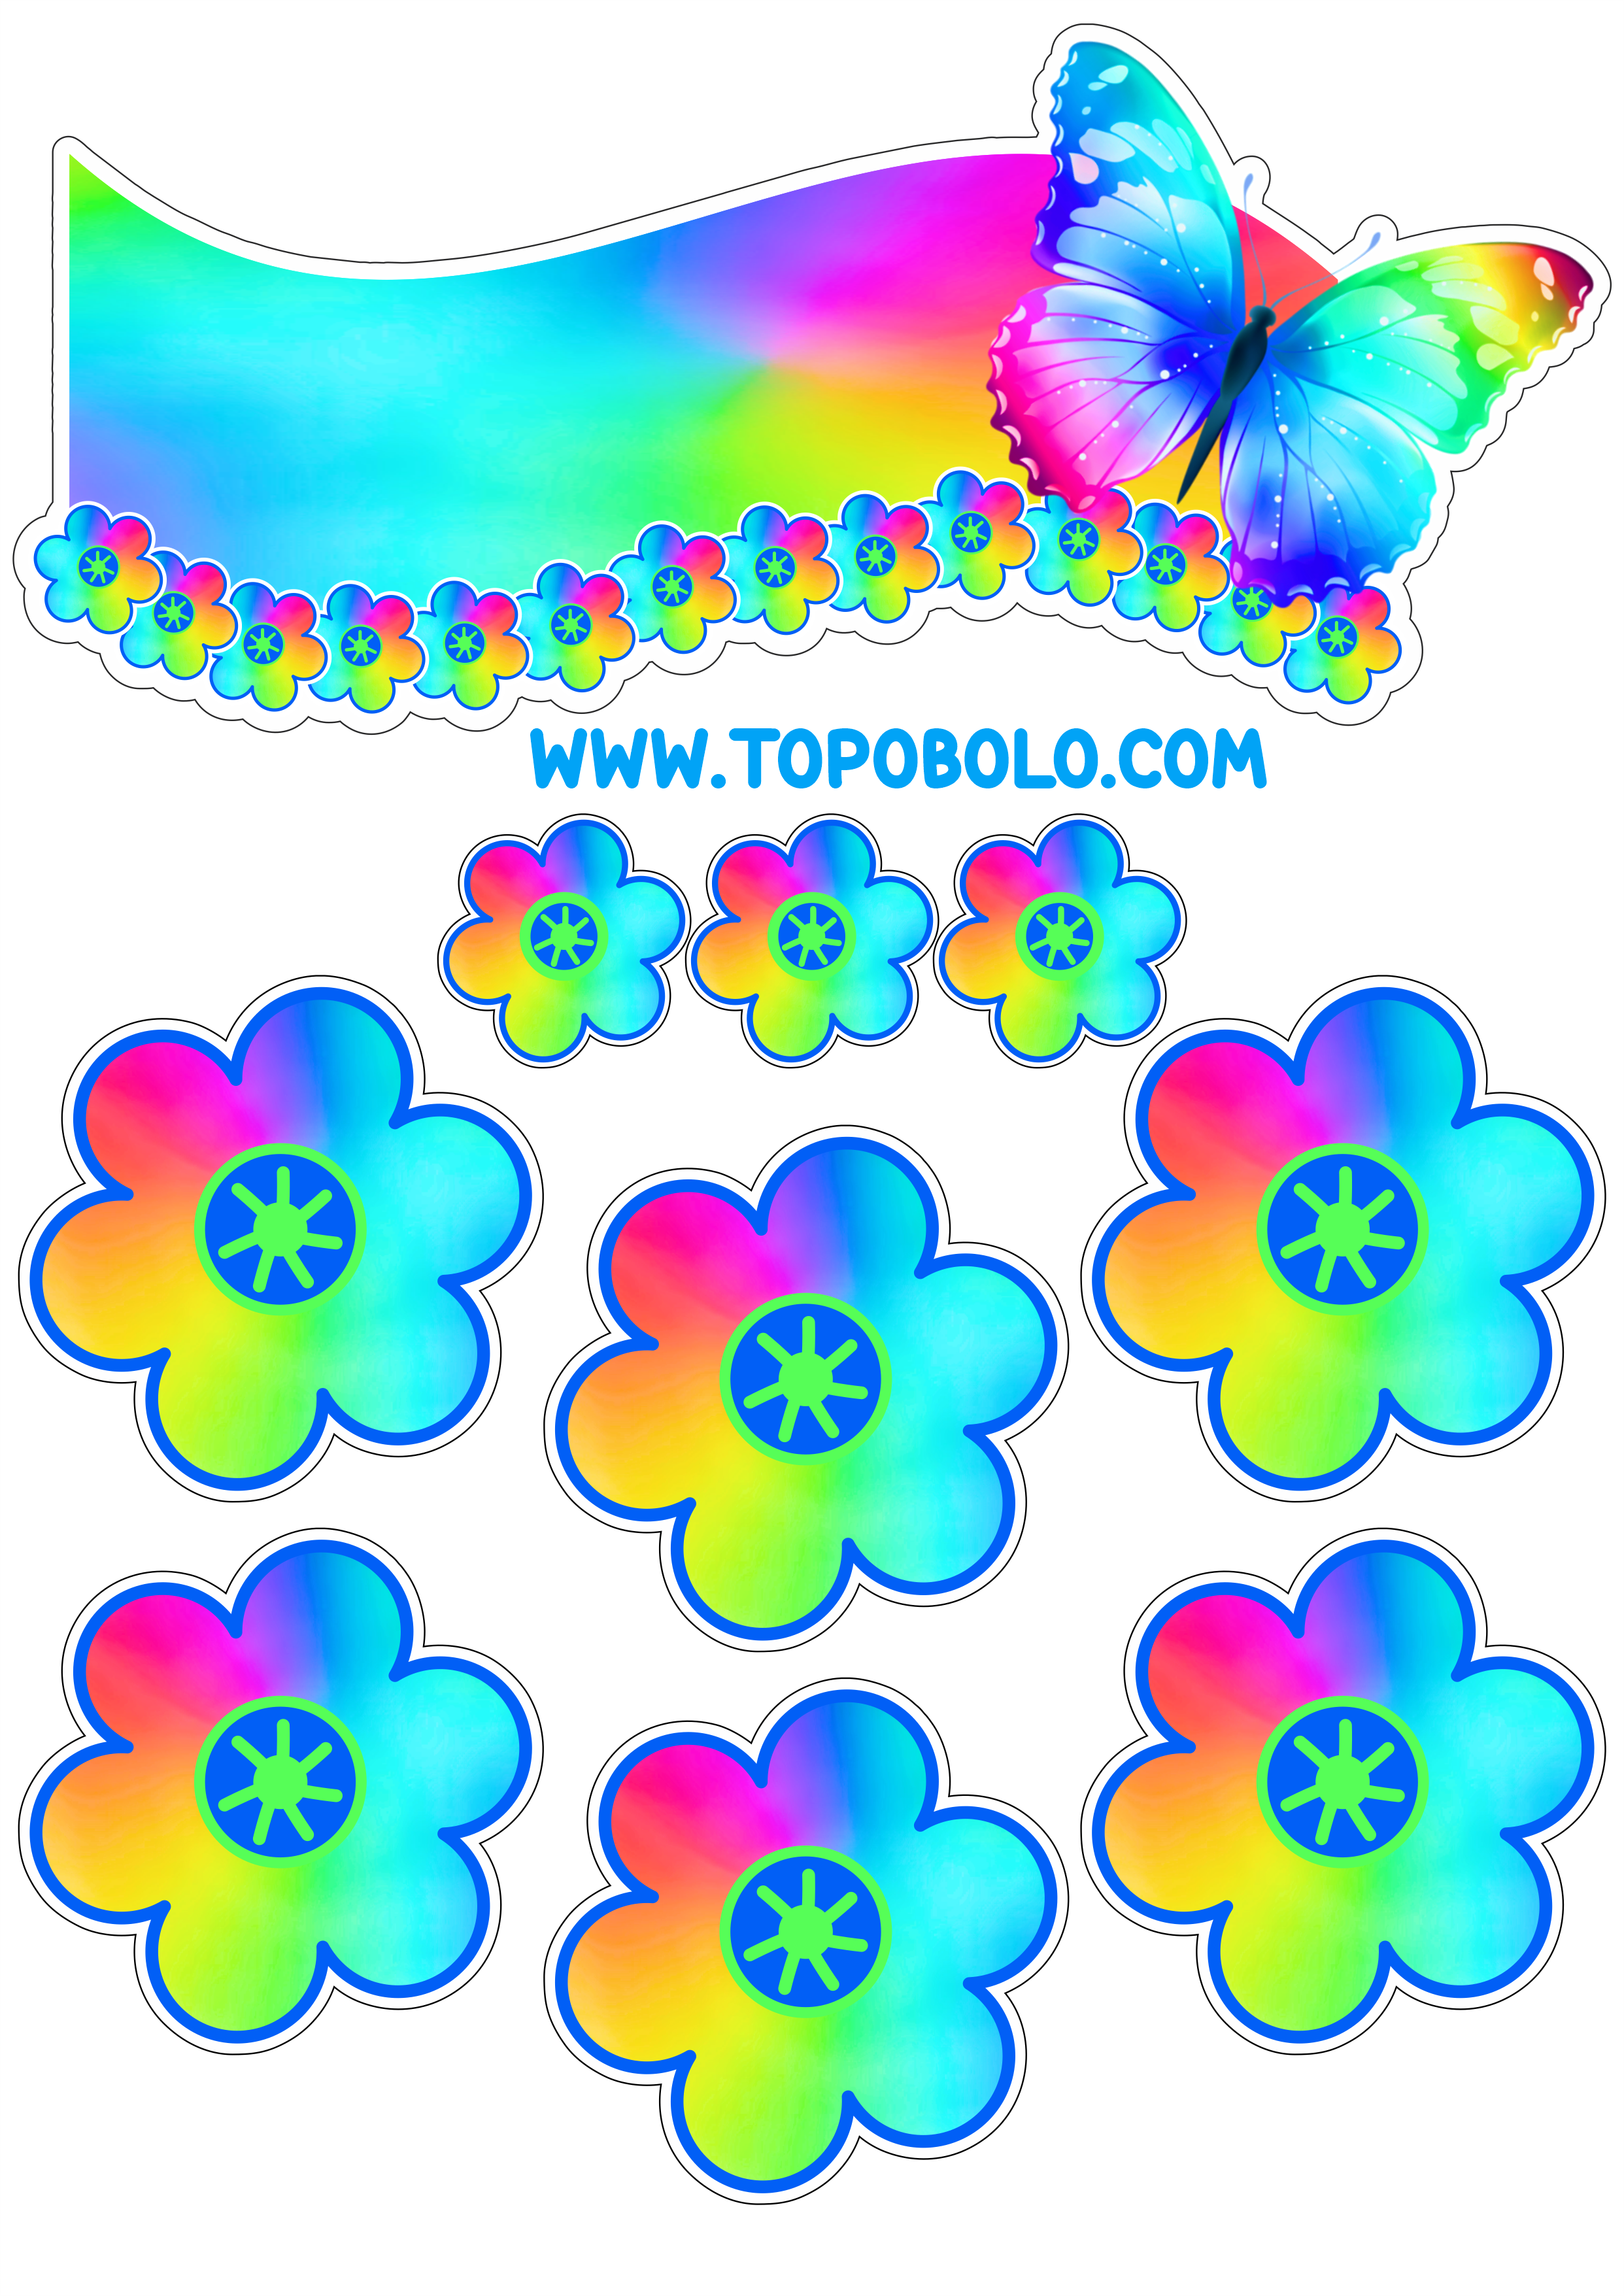 Topo de bolo para baixar borboletas e flores coloridas papelaria criativa com contorno para recorte festa pronta png